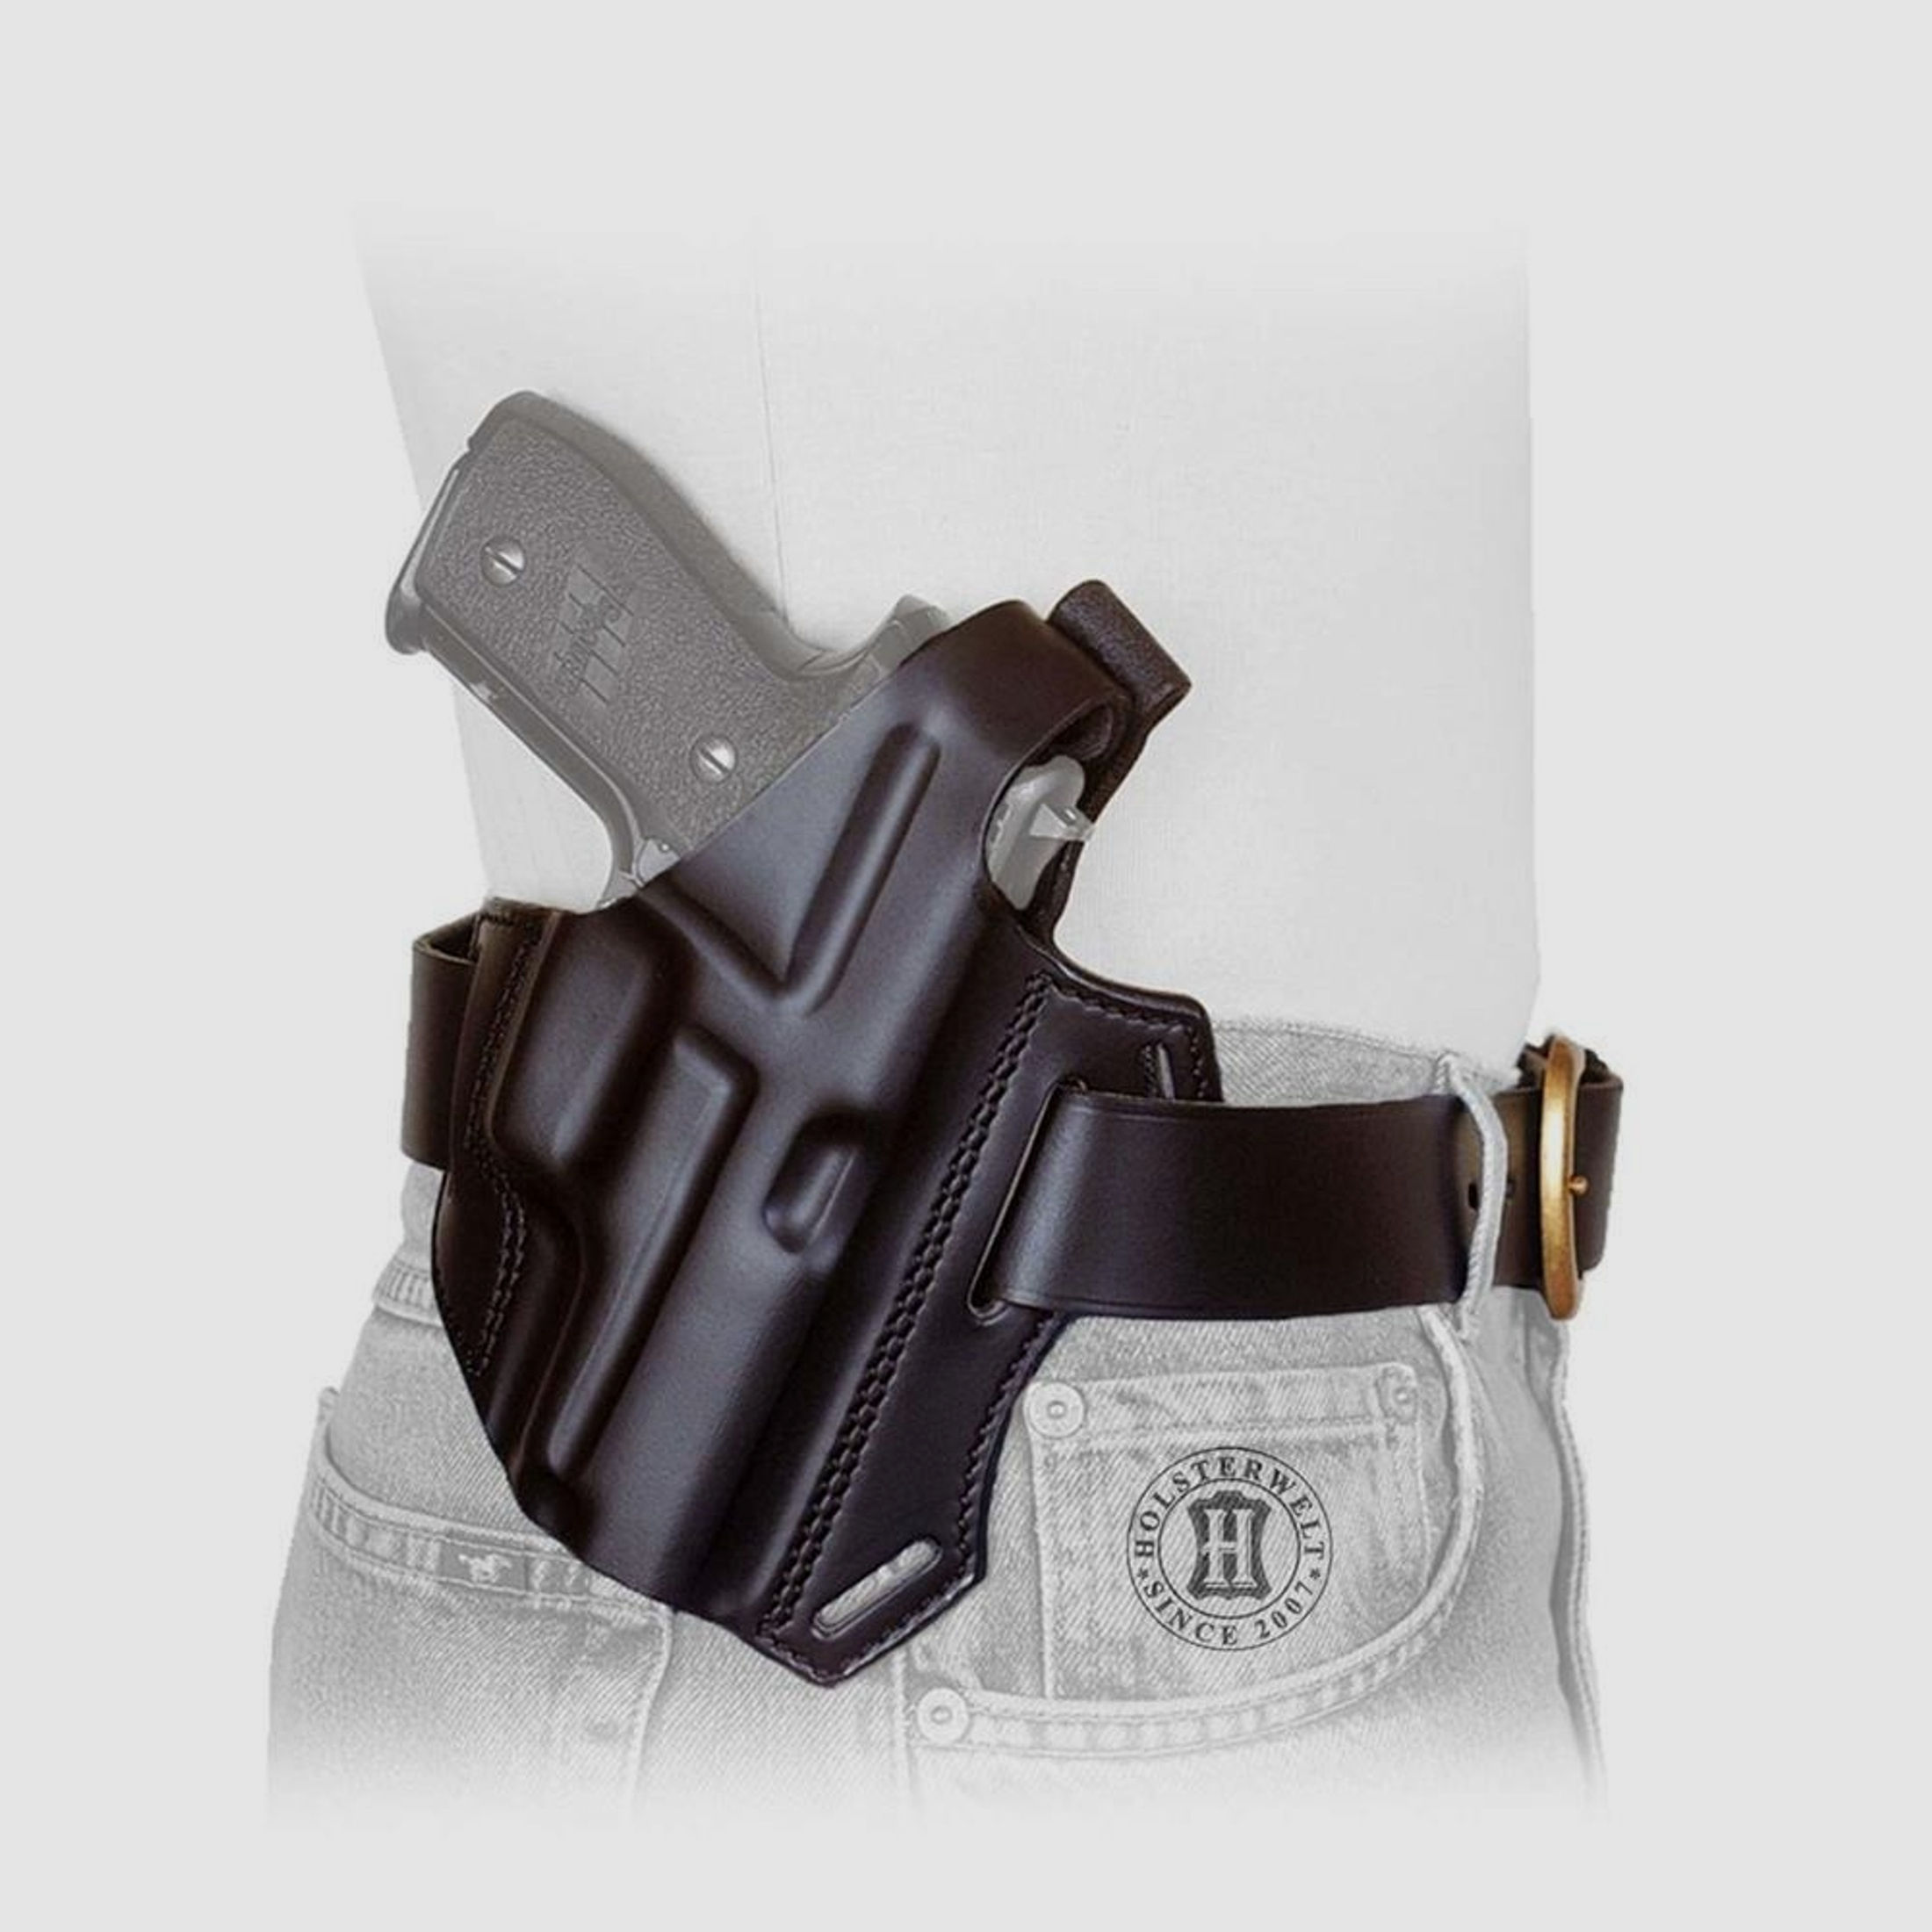 Gürtelholster / Schulterholster MULTI VARIO Beretta 92F/SB, Taurus PT 92/99/100 AF-Braun-Linkshänder